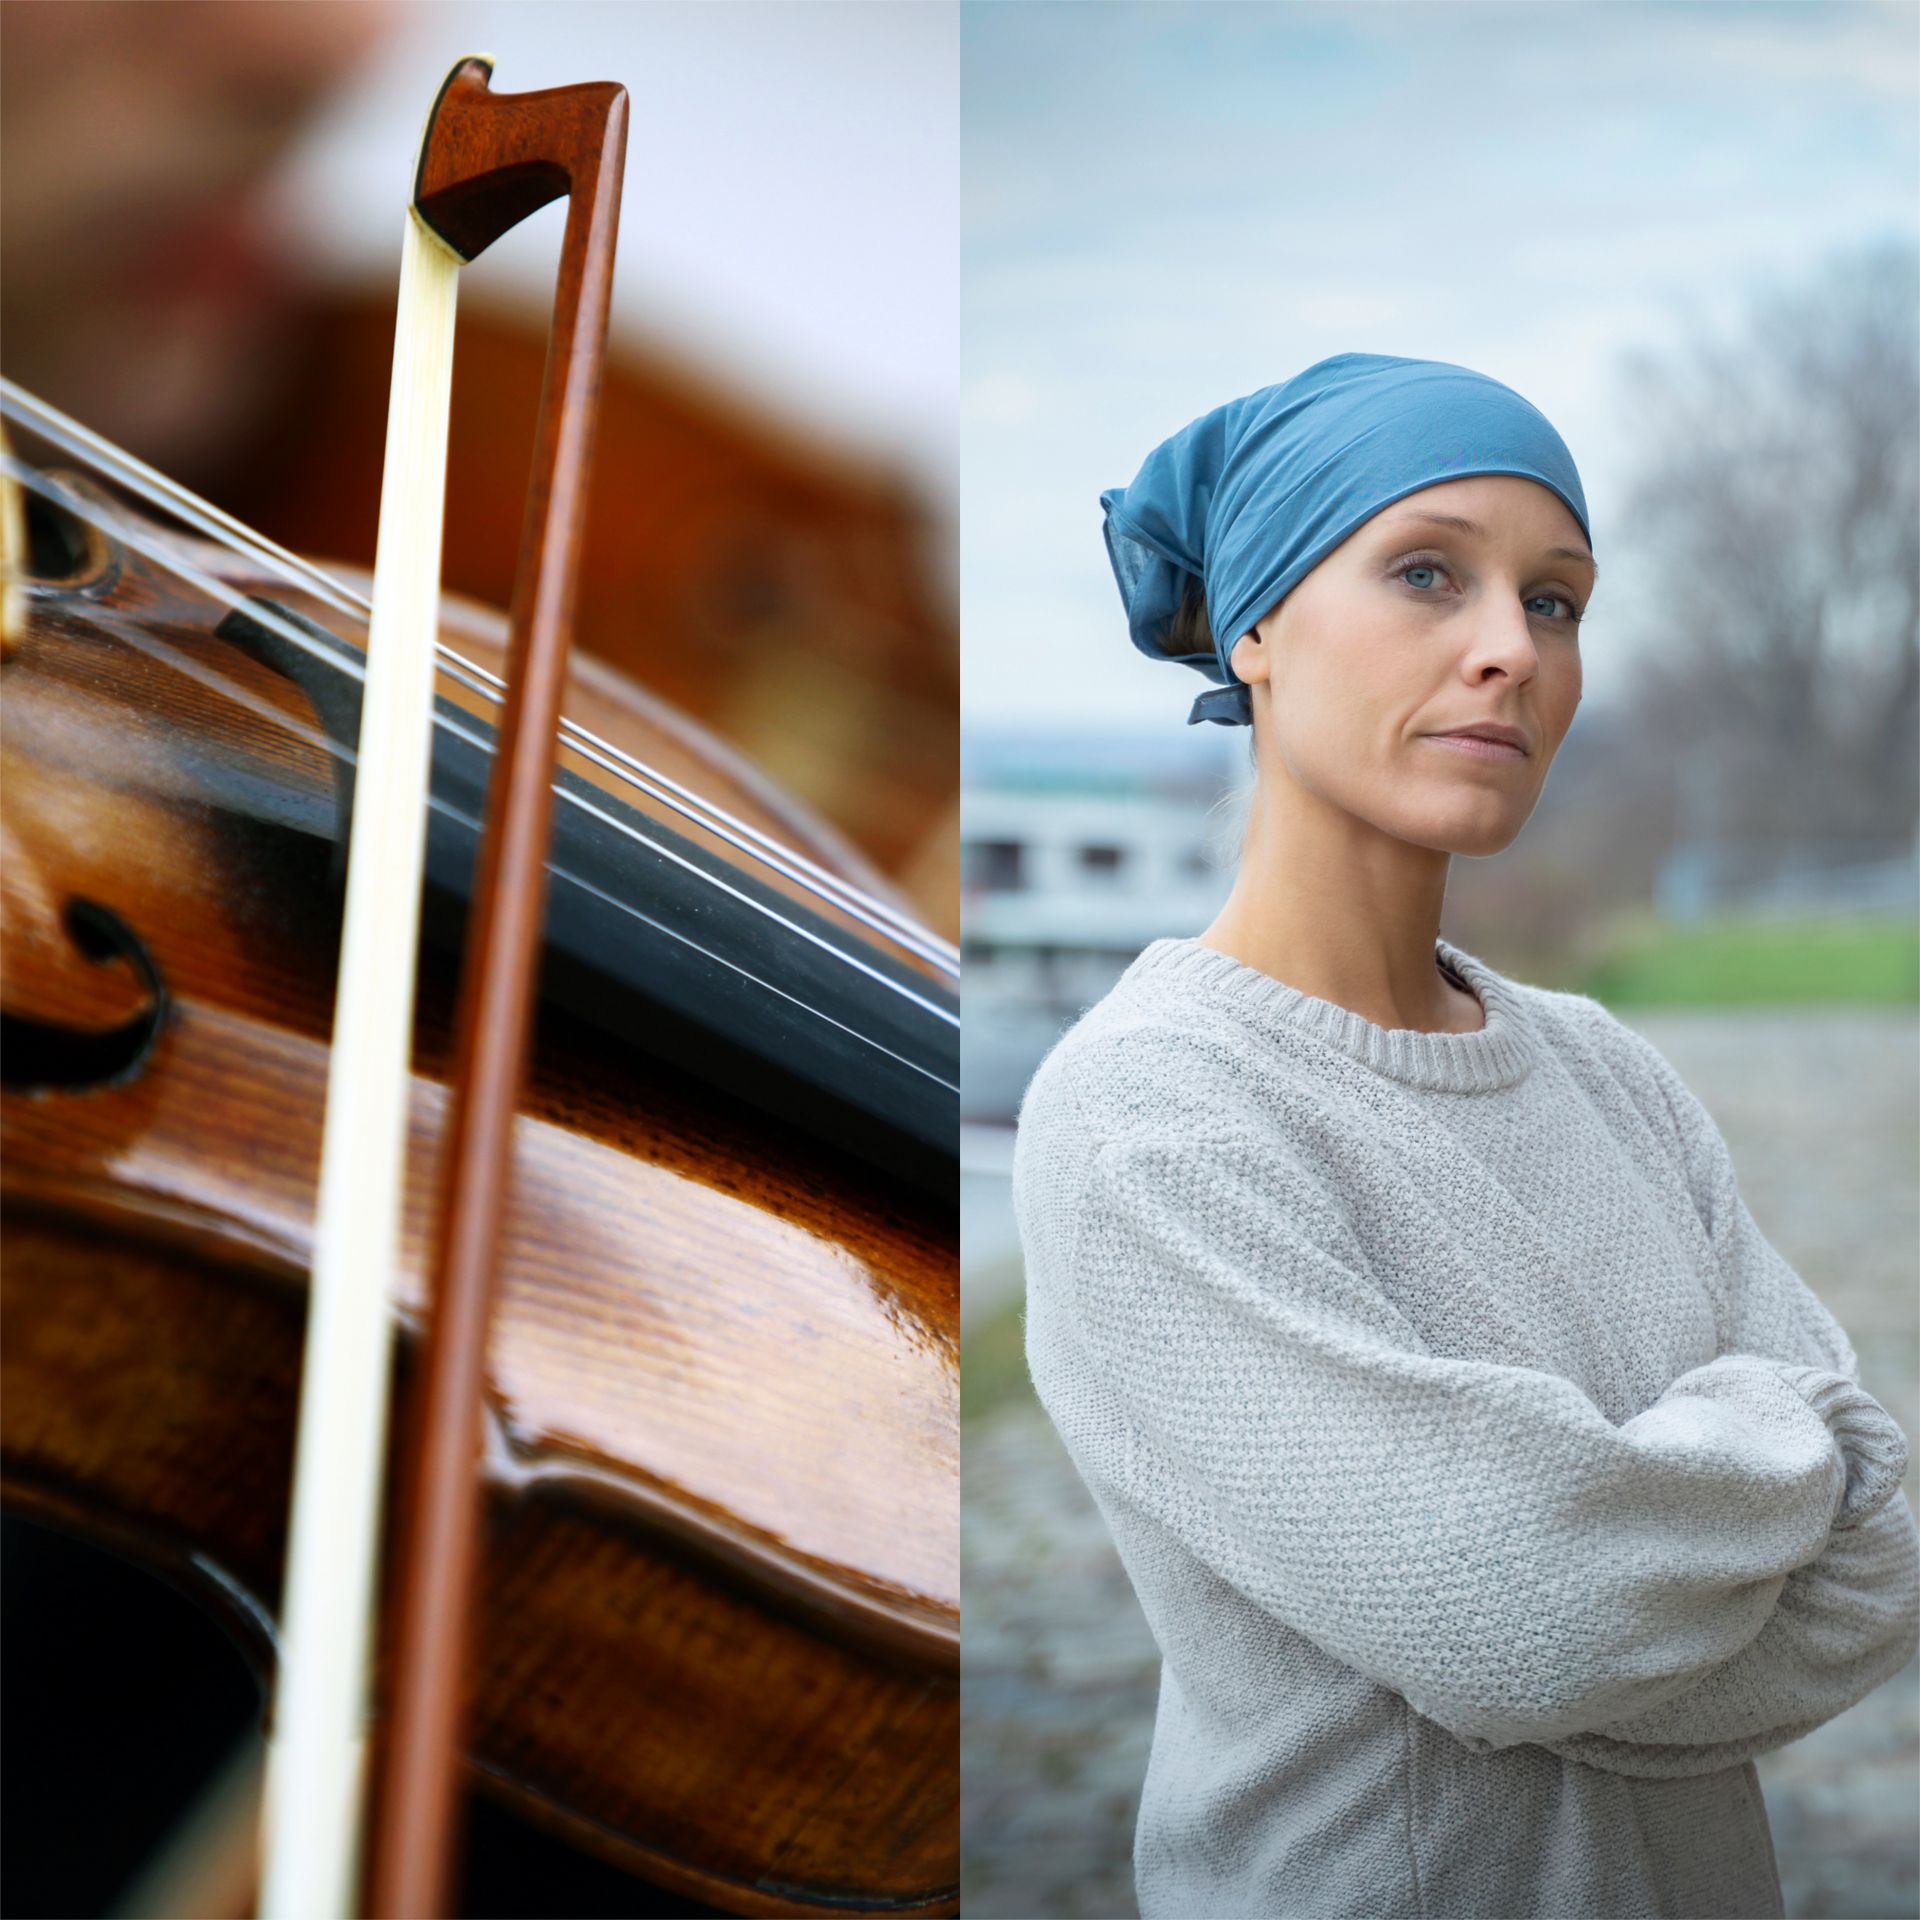 Elle joue du violon pendant qu'on lui enlève une tumeur - Voix des